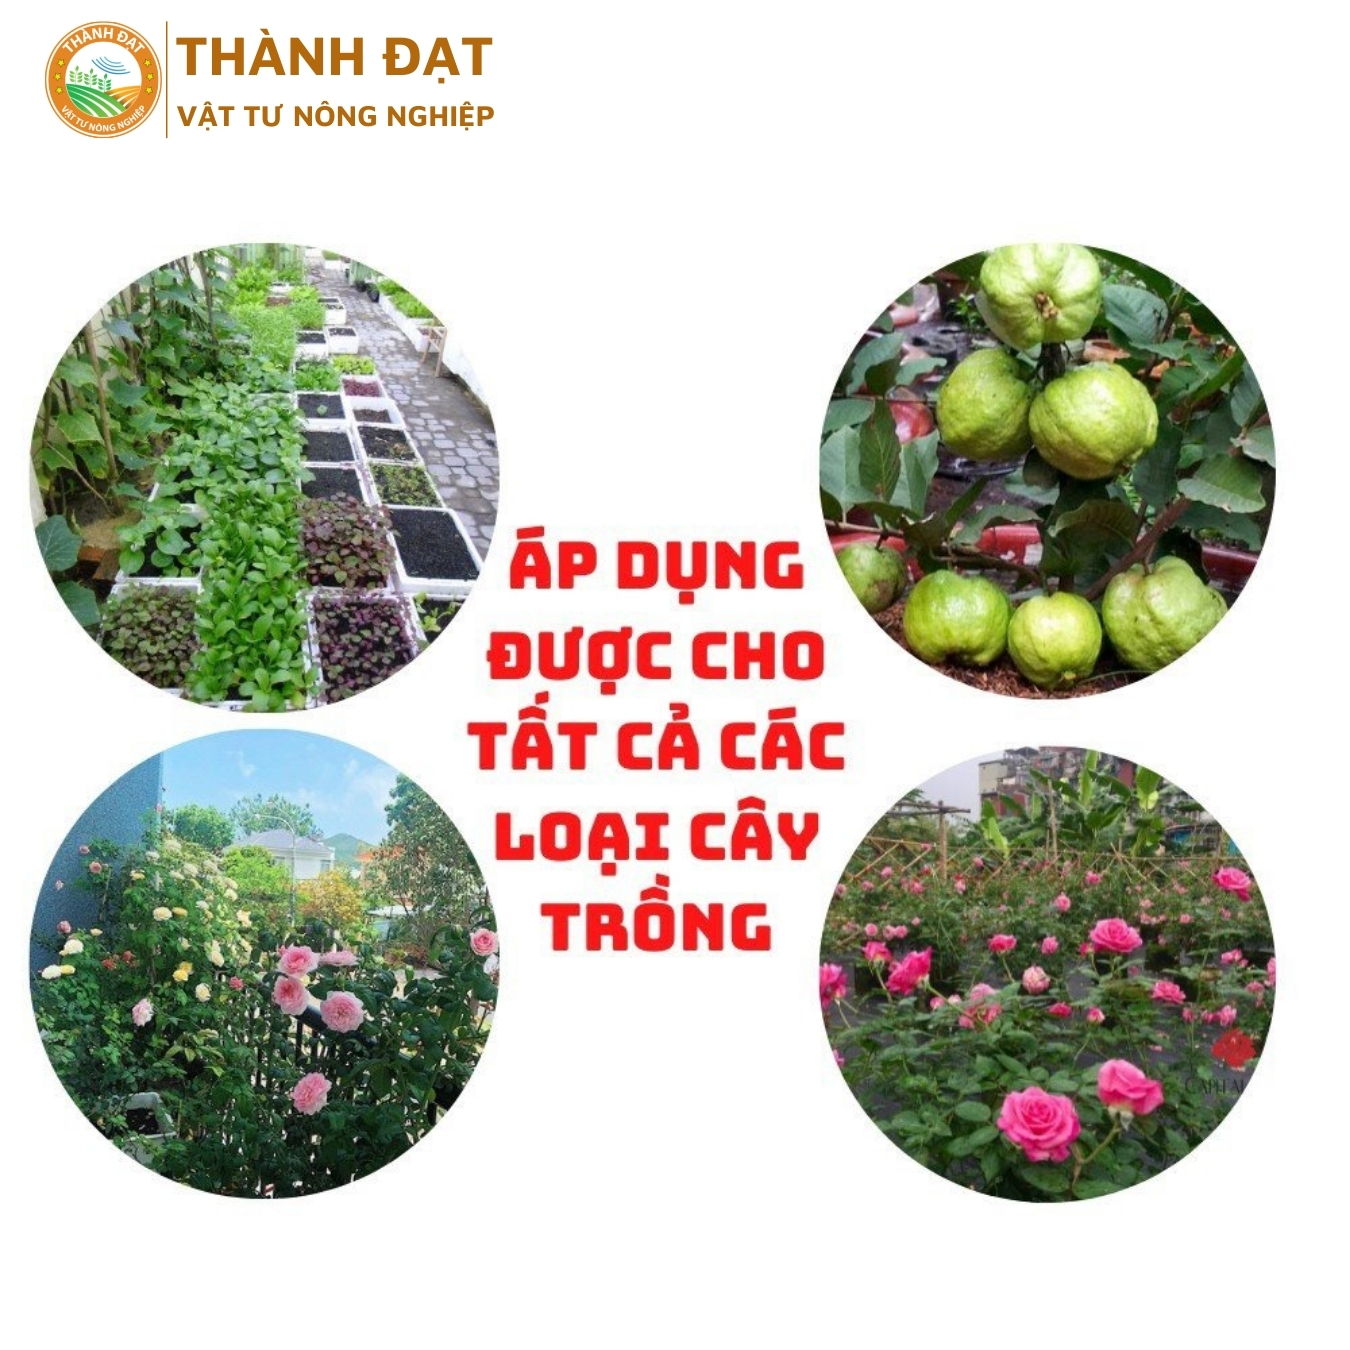 Phân bón đầu trâu NPK 20-20-15 gói 1Kg Bình Điền giúp cây tăng trưởng mạnh chuyên dùng cho rau, hoa, cây cảnh